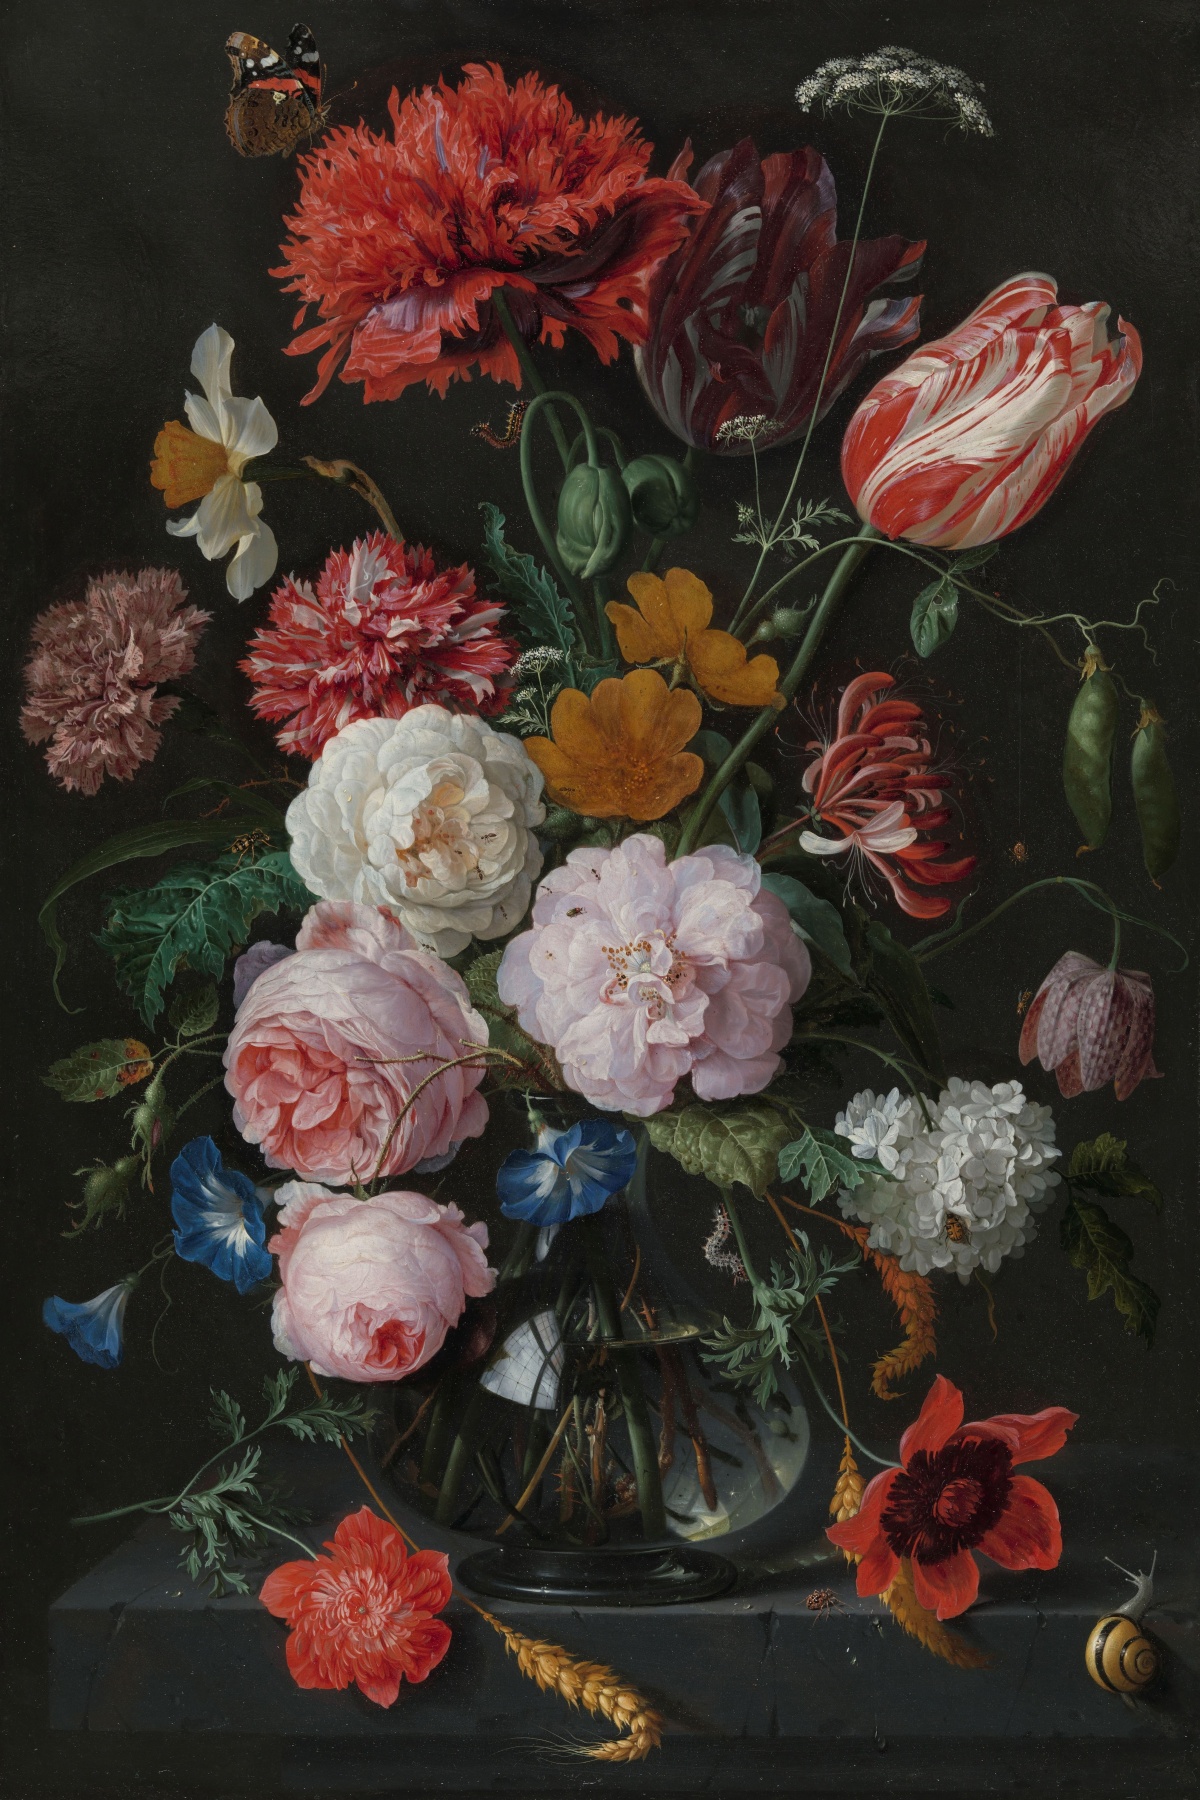 Stilleven met bloemen in een glazen vaas - Jan Davidsz. de Heem 5